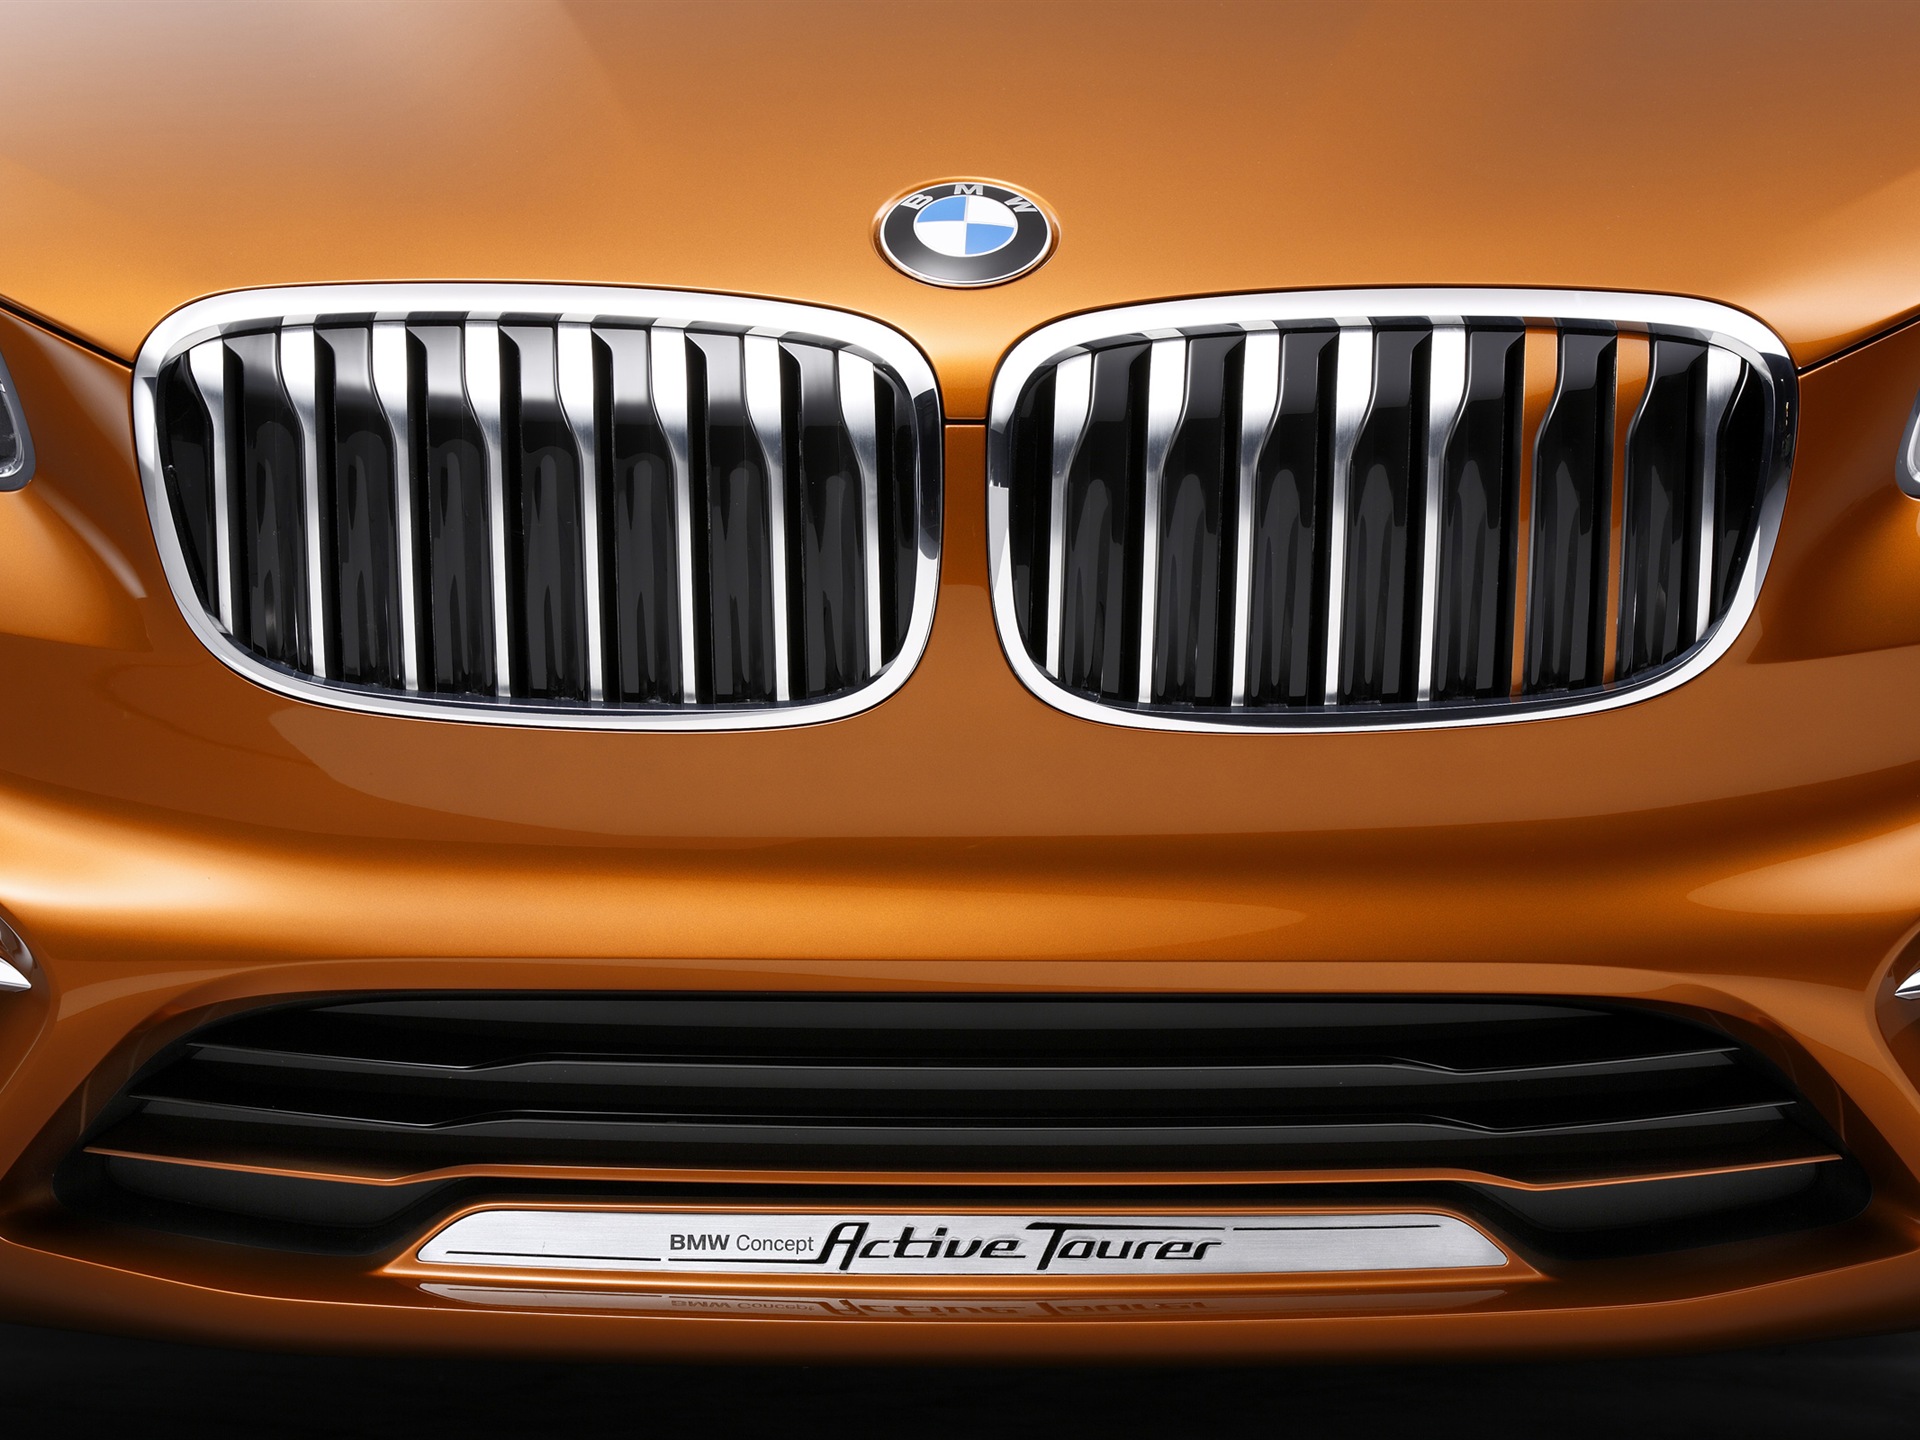 2013 BMW Concept Aktive Tourer HD Wallpaper #15 - 1920x1440